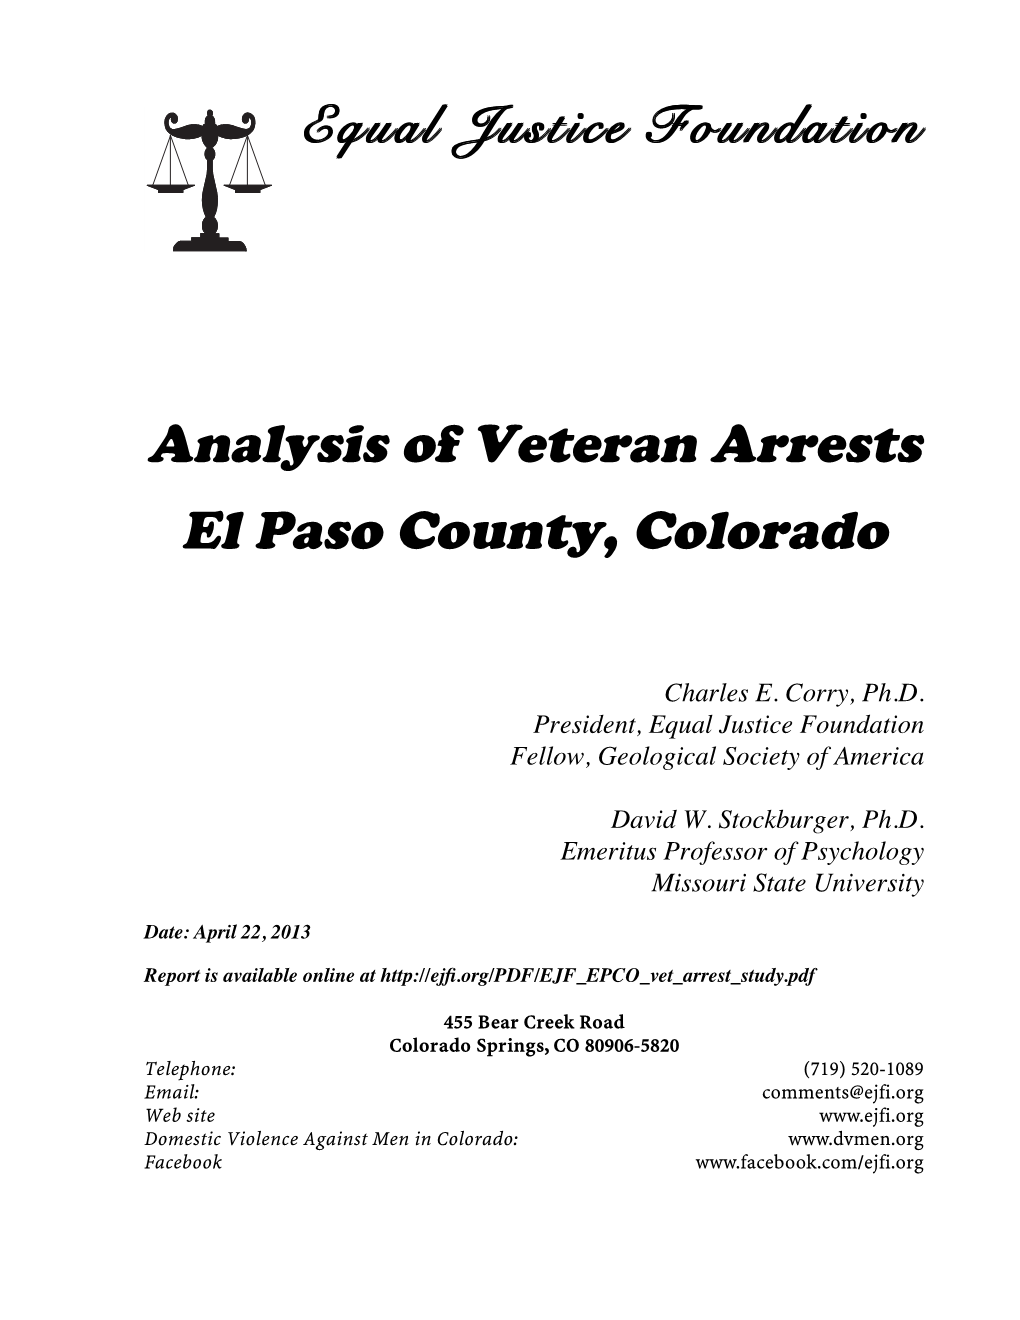 Analysis of Veteran Arrests, El Paso County, Colorado